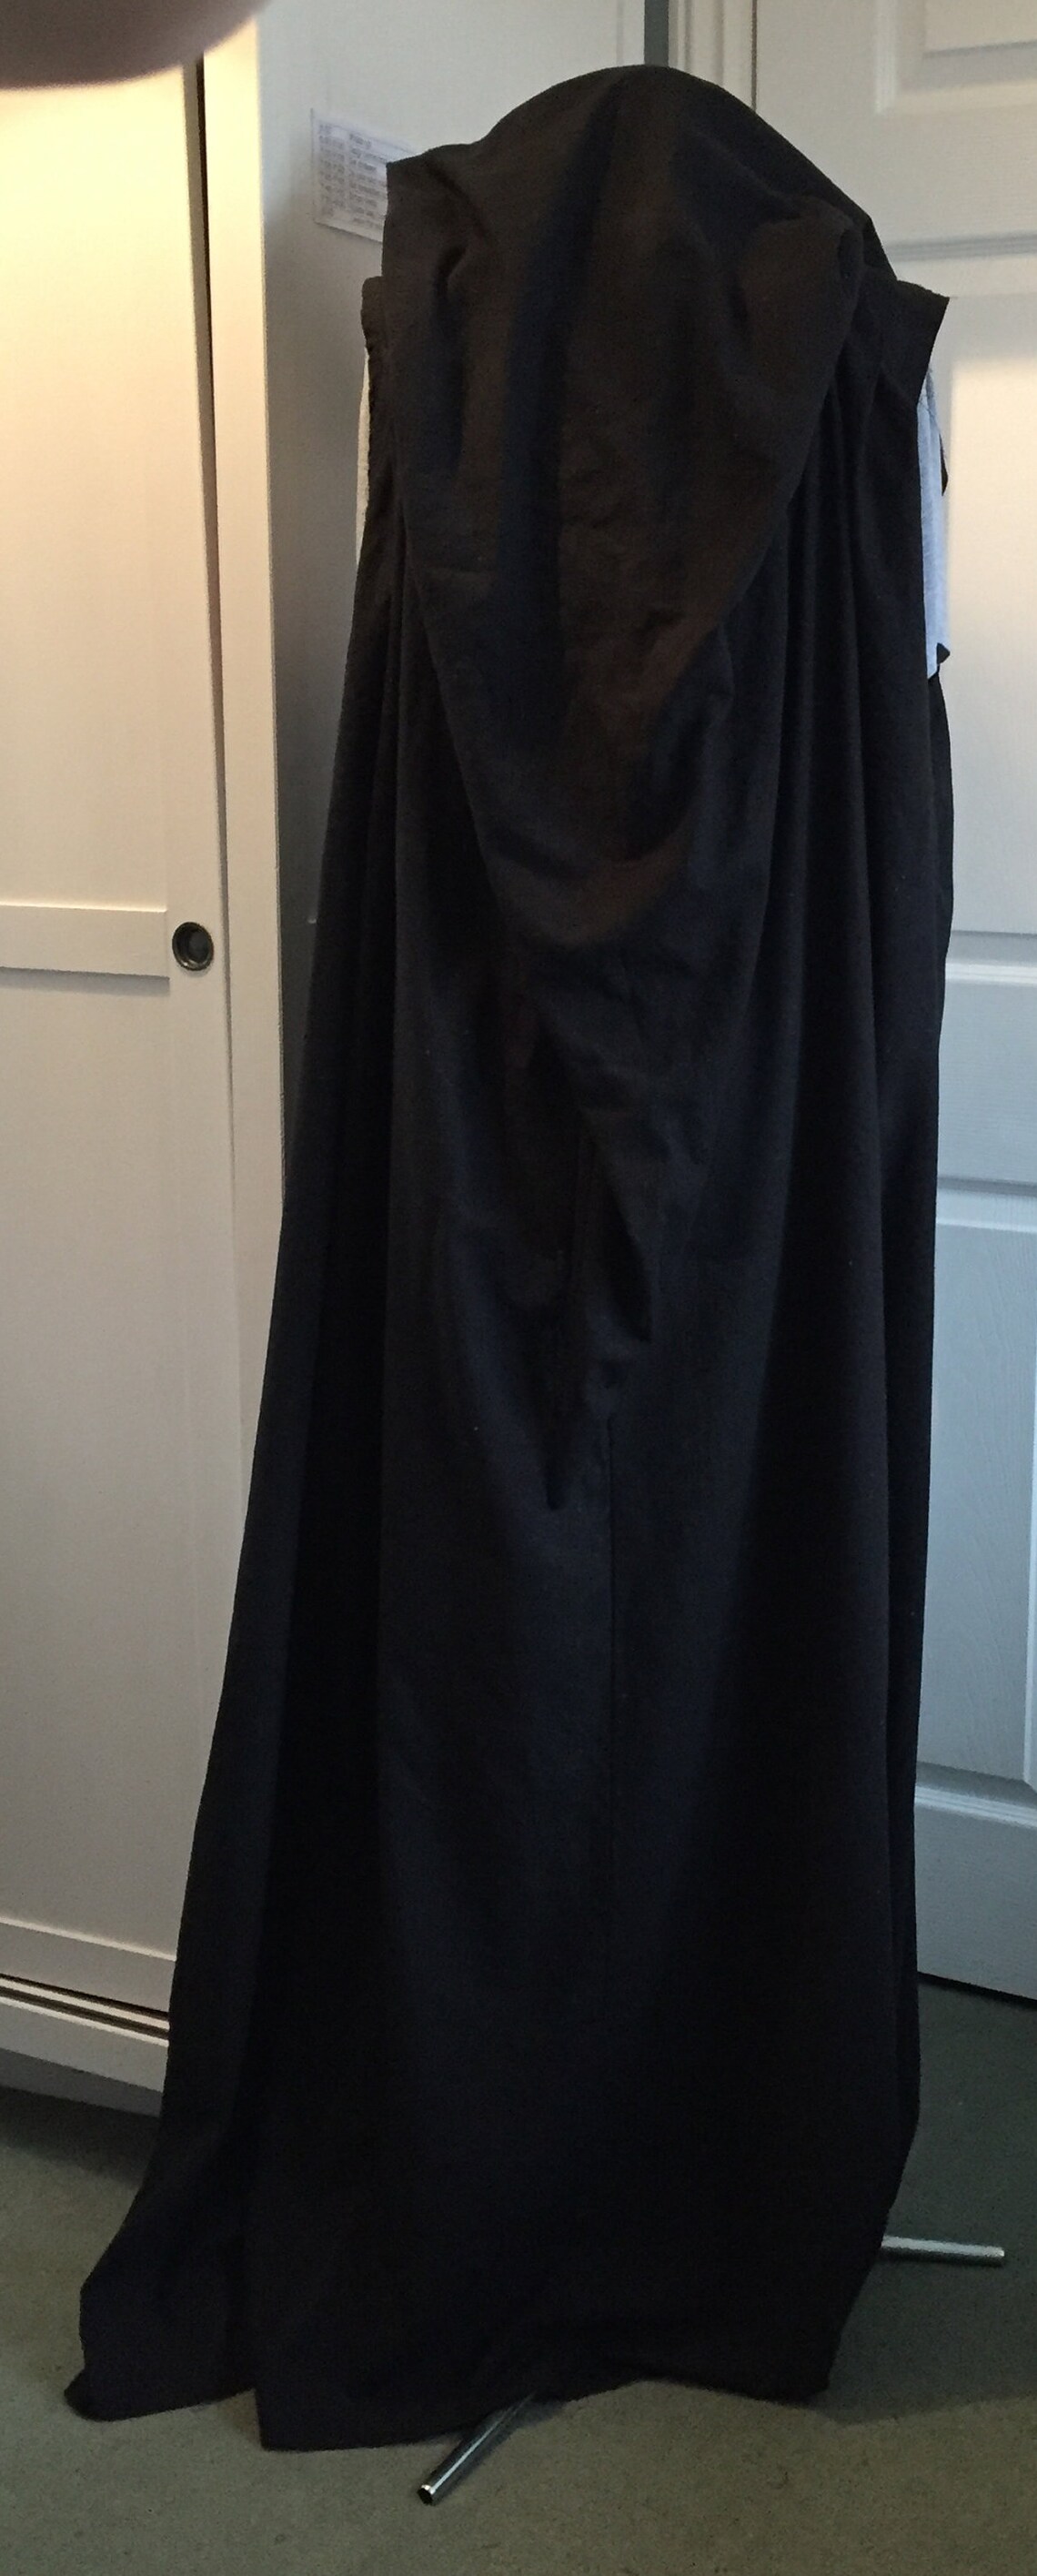 Harry Potter Death Eater inspired black sleeveless cloak robe | Etsy